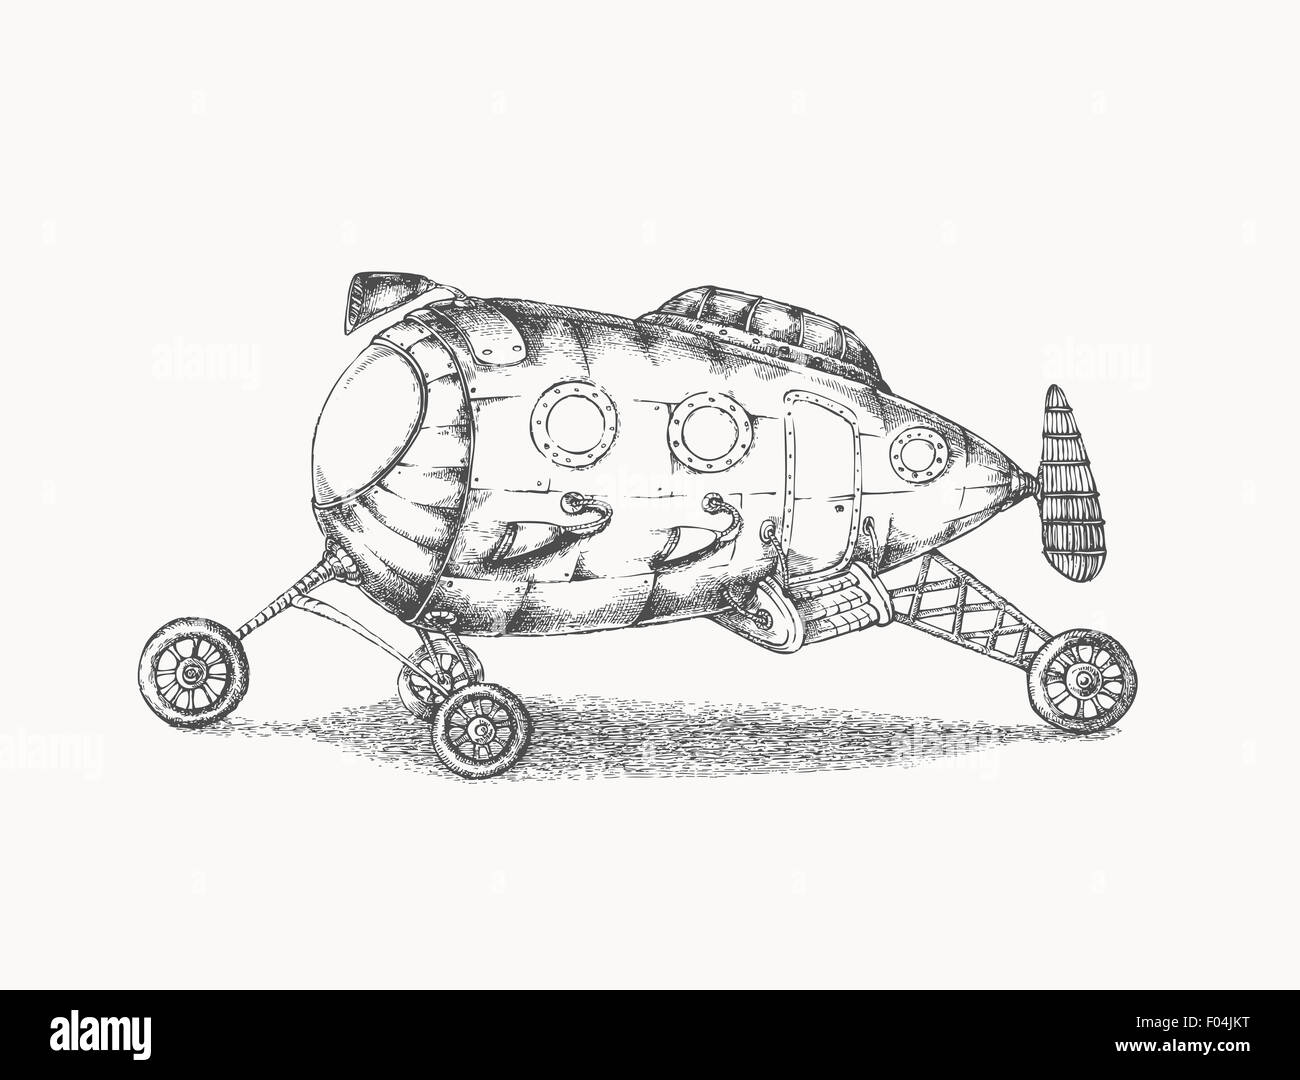 Appareil de transport - invention - dessin vintage Banque D'Images